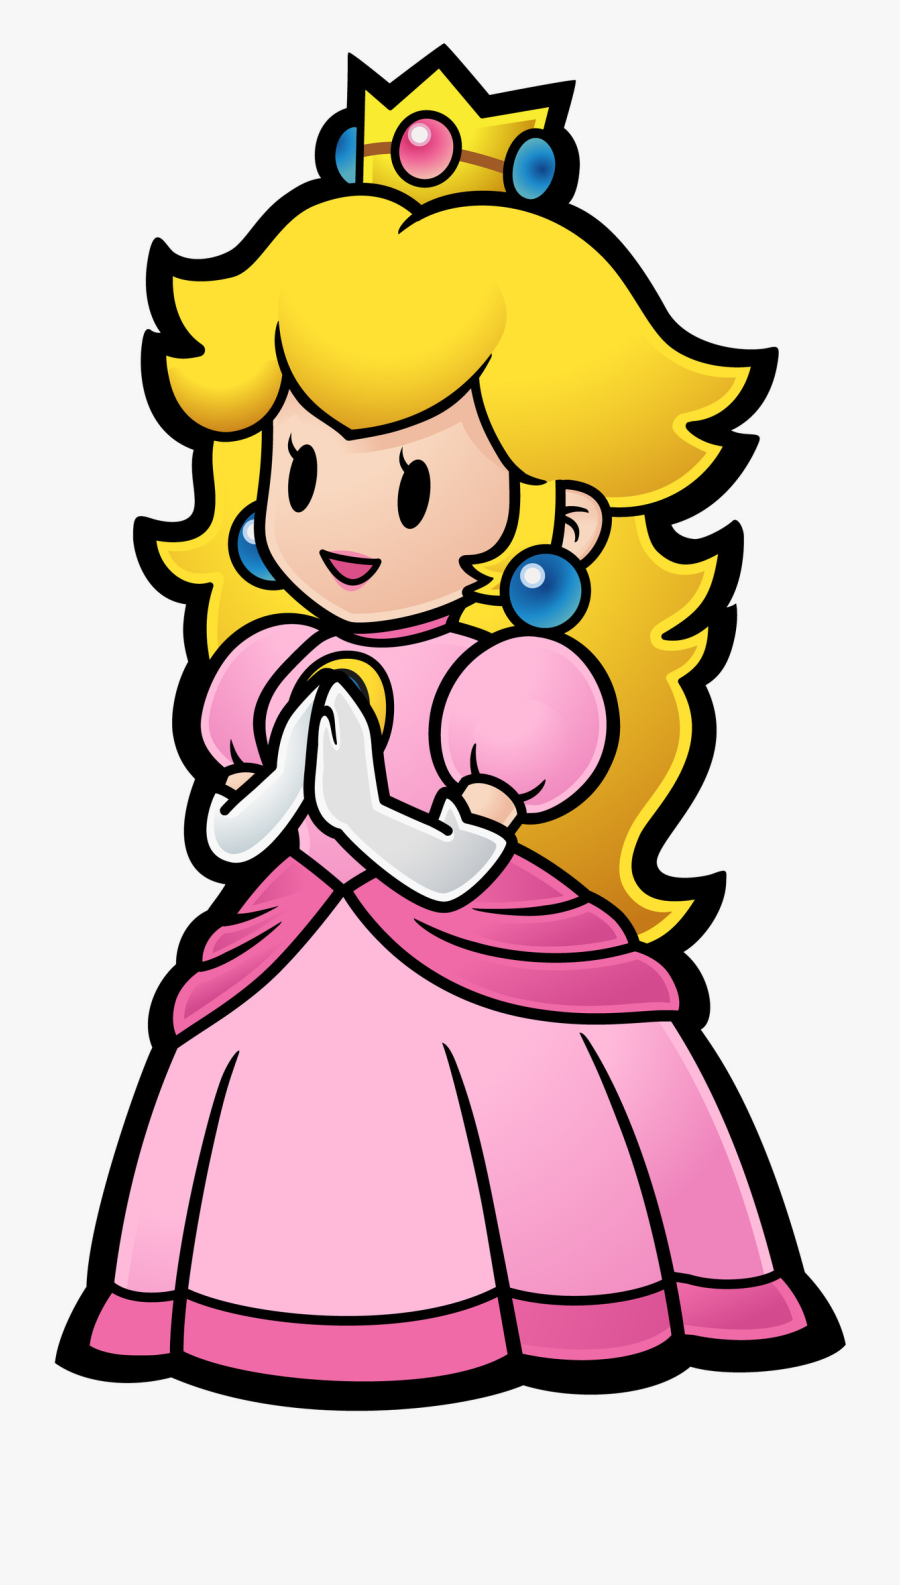 Princess Peach Clipart Angry - Princesa De Mario Bros, Transparent Clipart